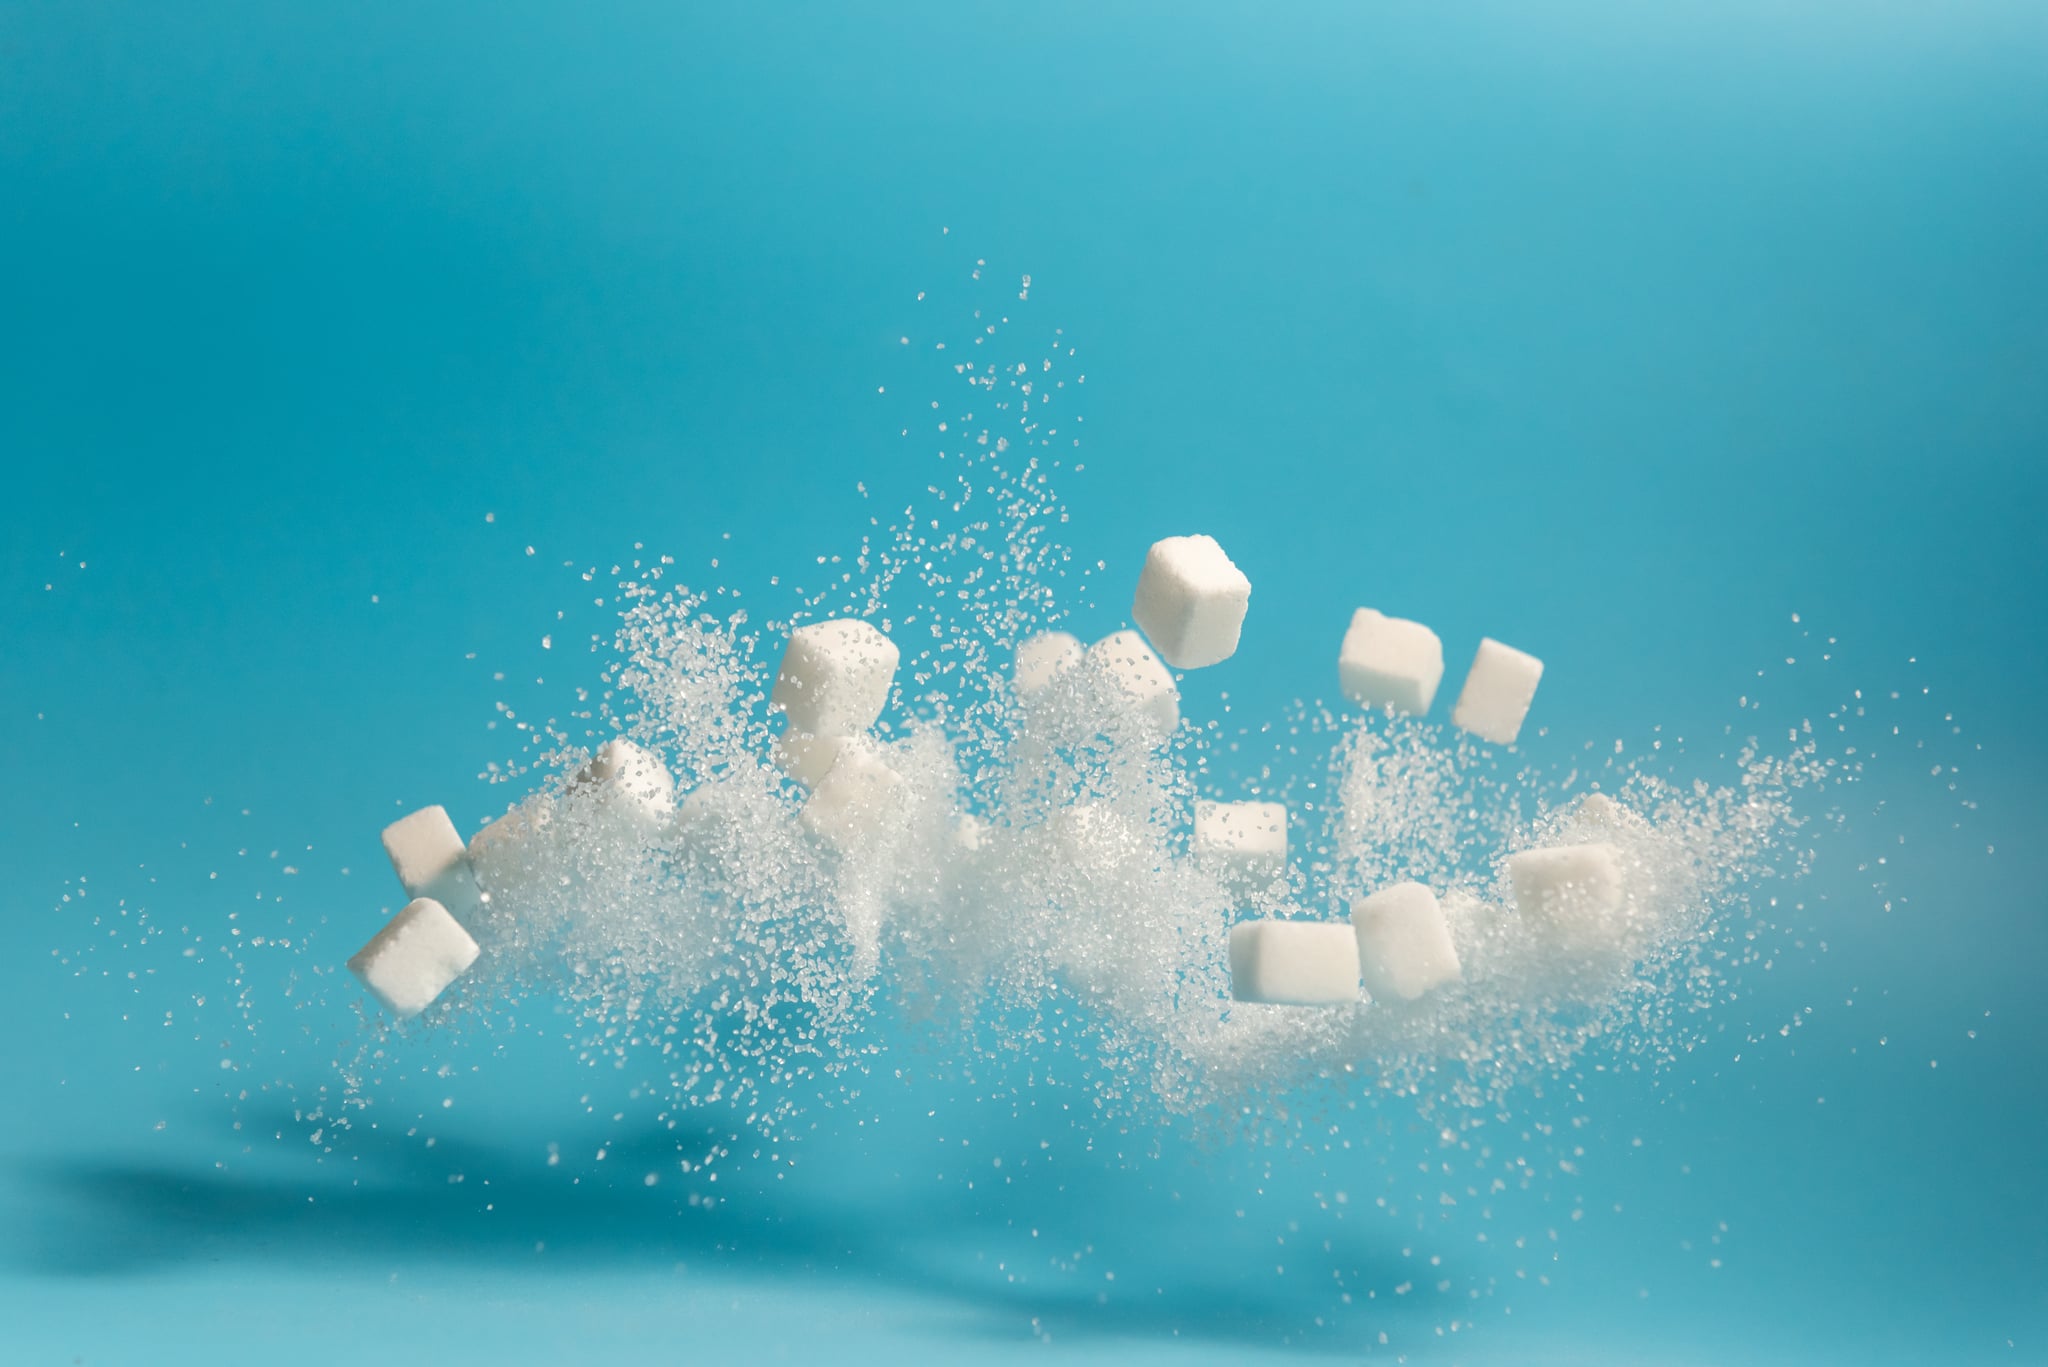 下降和糖糖立方体人造甜味剂的象征:它对你有害吗?